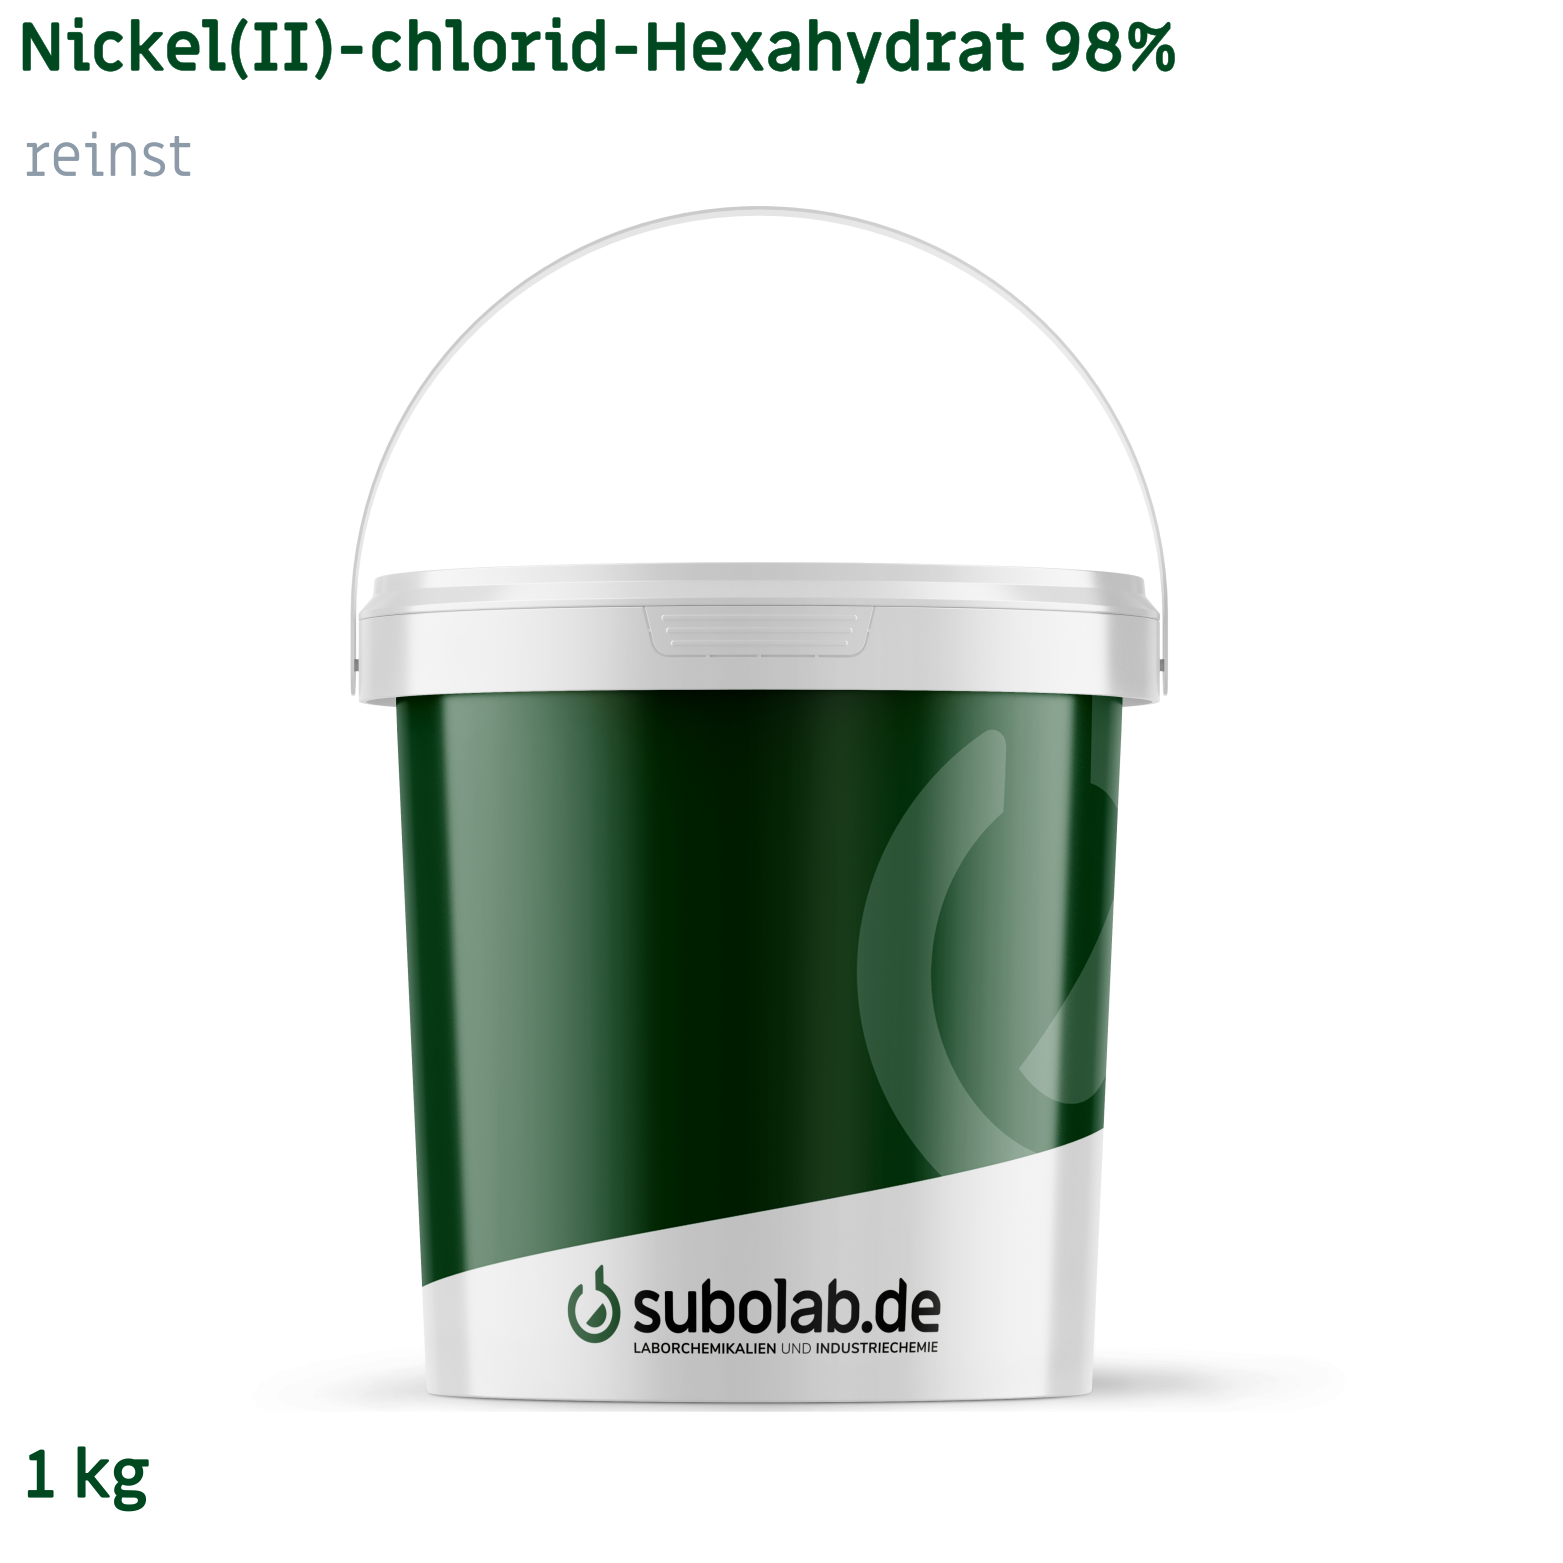 Bild von Nickel(II)-chlorid - Hexahydrat 98% reinst (1 kg)